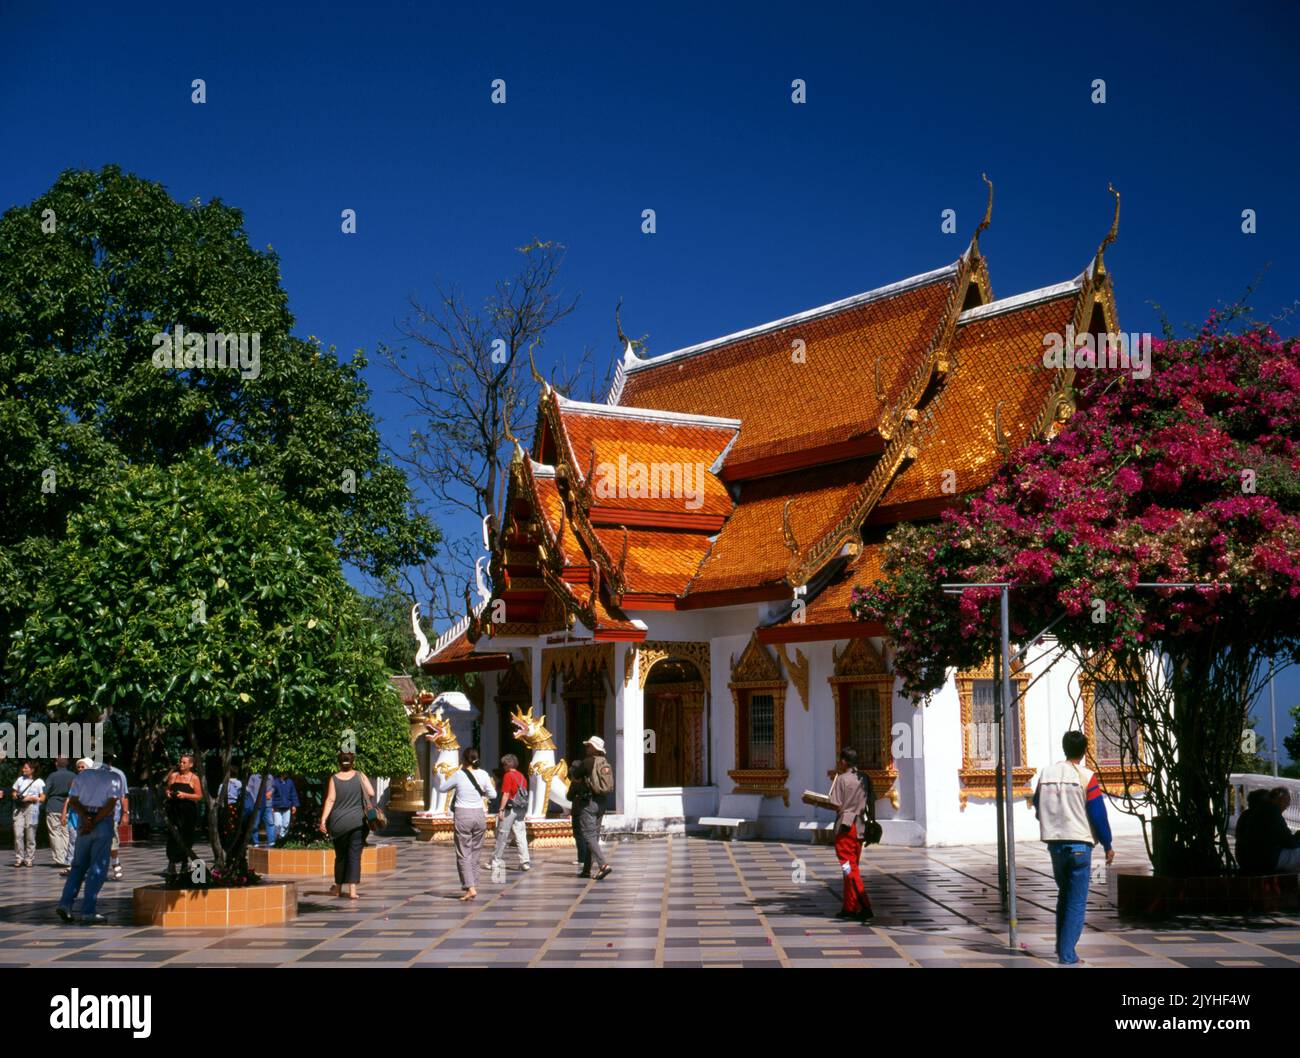 Thailand: Wat Phrathat Doi Suthep, ein buddhistischer Tempel der Theravada, der sich auf dem Doi Suthep (Suthep-Berg) befindet und die Stadt Chiang Mai überblickt. Der prächtige vergoldete Chedi aus dem 16.. Jahrhundert bietet einen herrlichen Blick über das Tal Chiang Mai bis zum Fluss Ping. König Mengrai gründete 1296 die Stadt Chiang Mai (was "neue Stadt" bedeutet) und folgte Chiang Rai als Hauptstadt des Lanna-Königreichs nach. Stockfoto